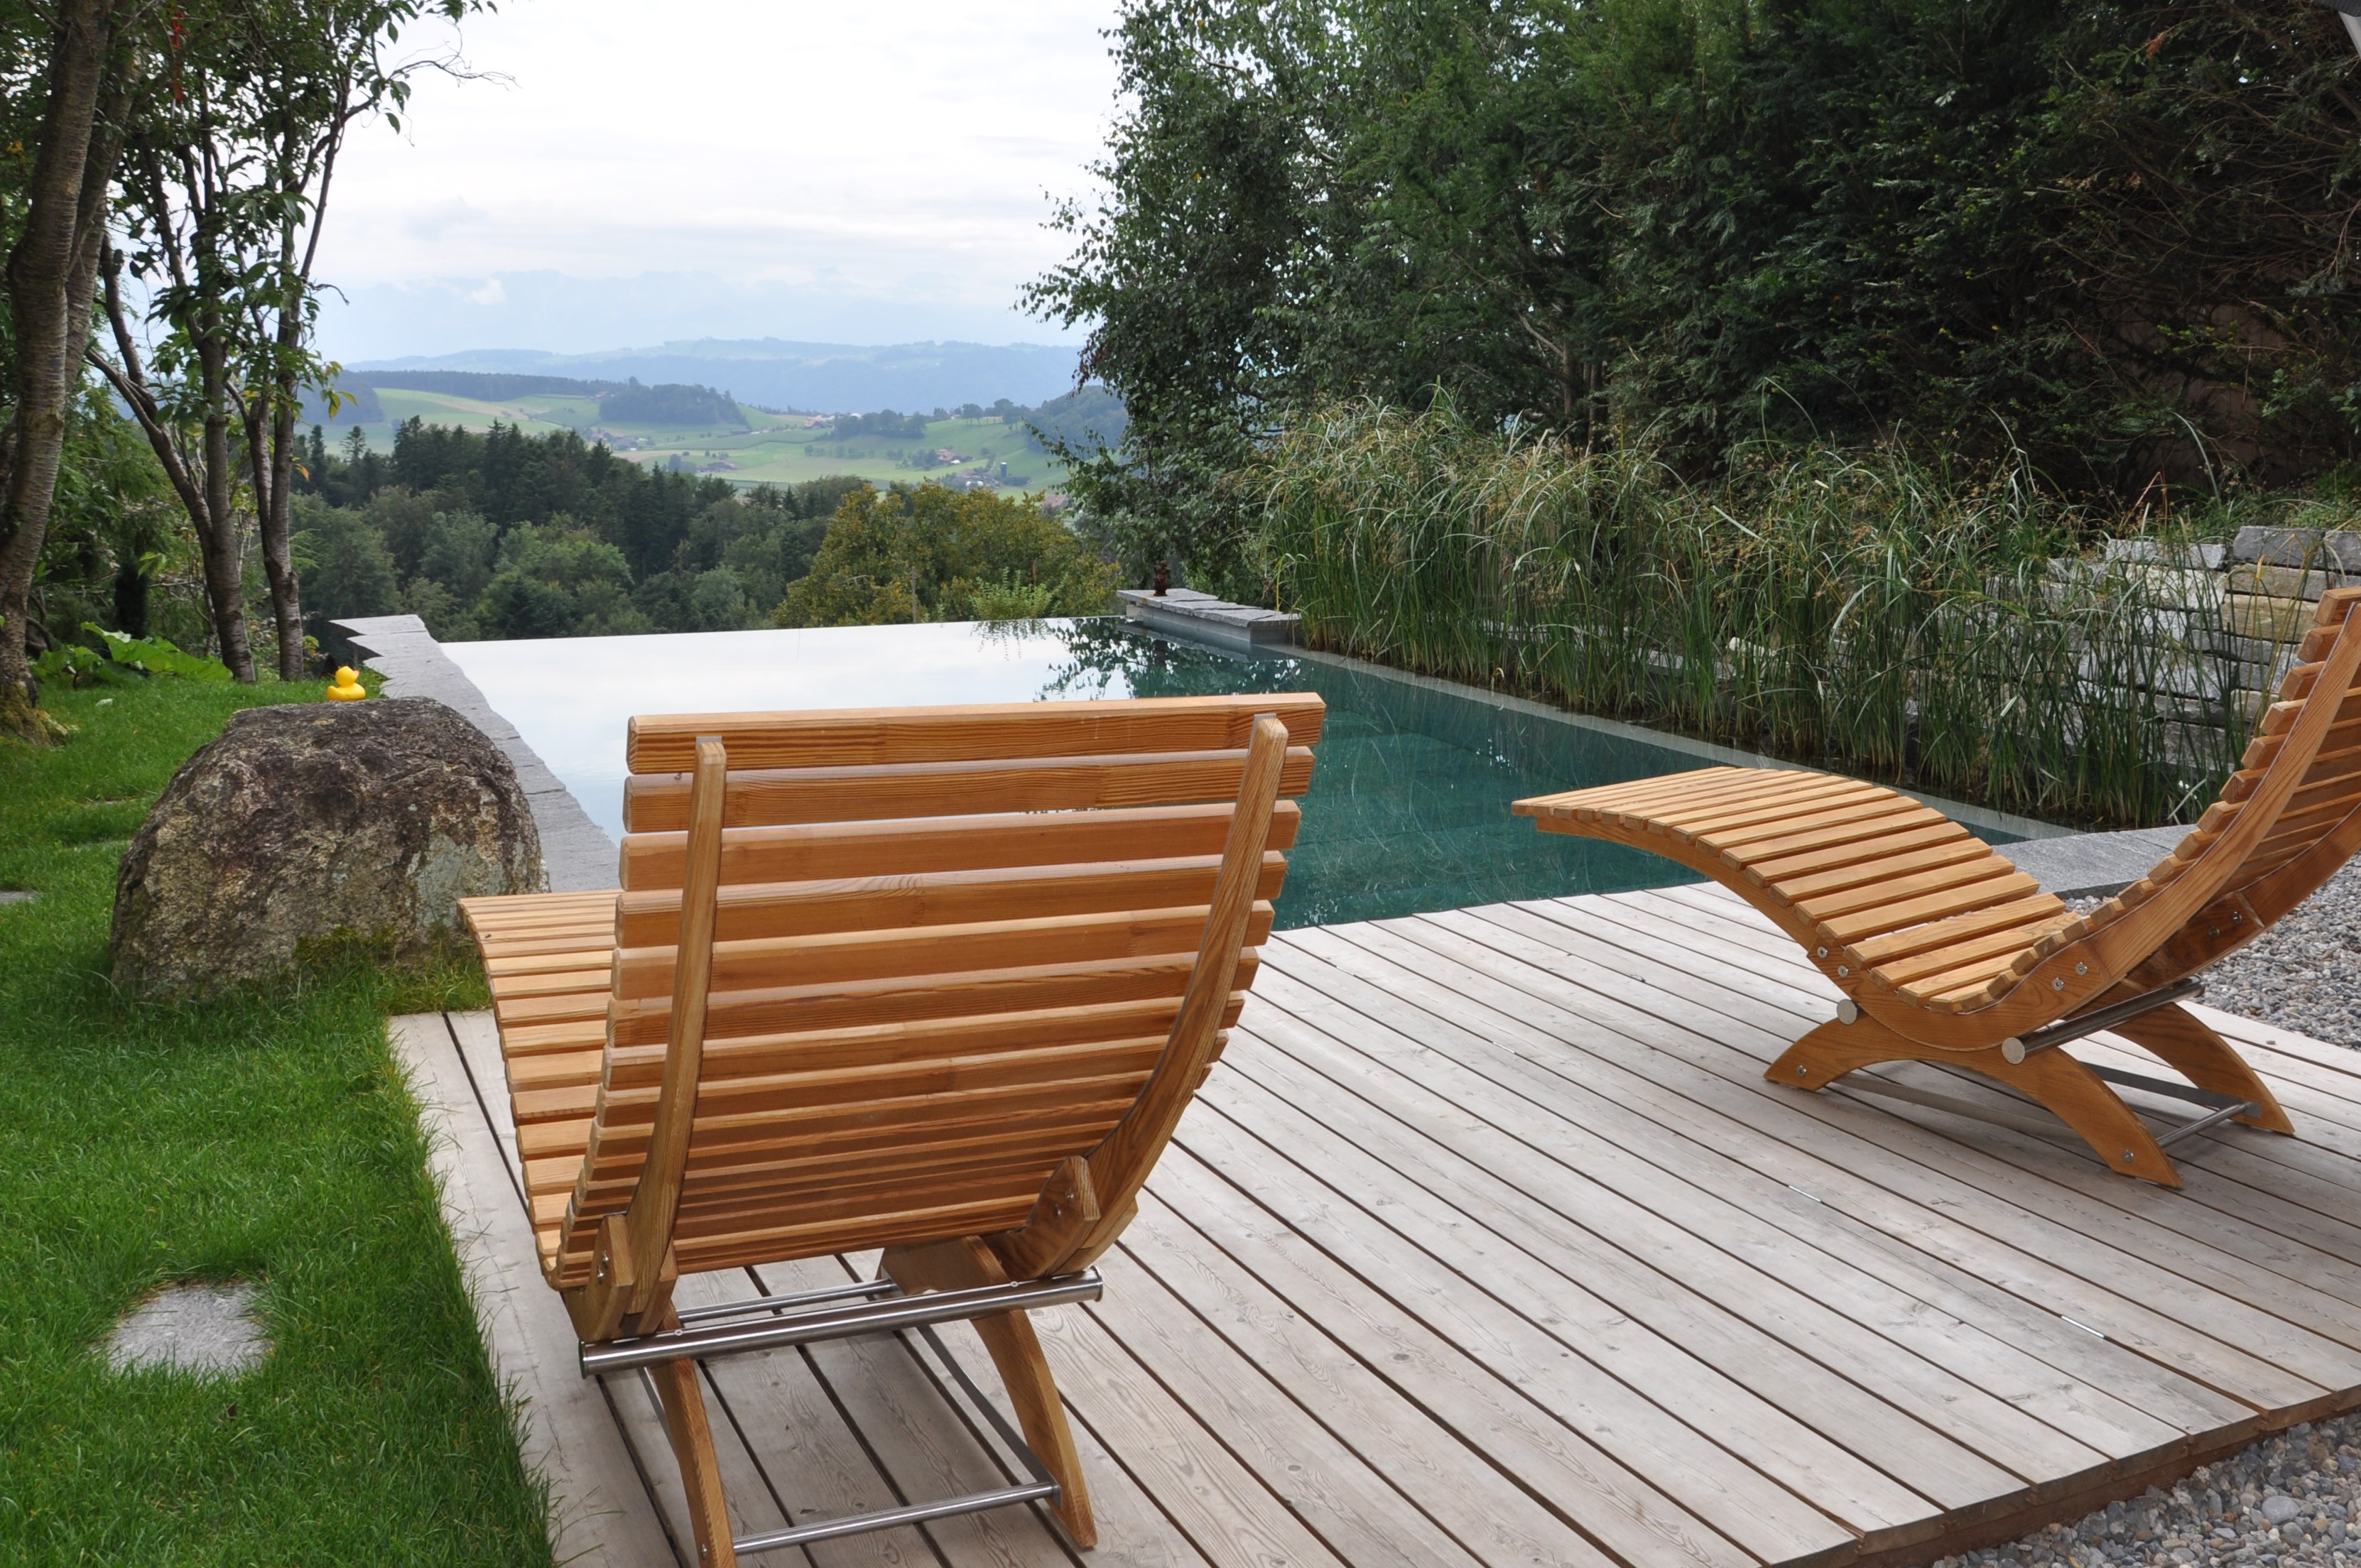 Hellbraune Holz-Liegestühle auf Holzdeck vor Infinity Pool mit schöner Aussicht